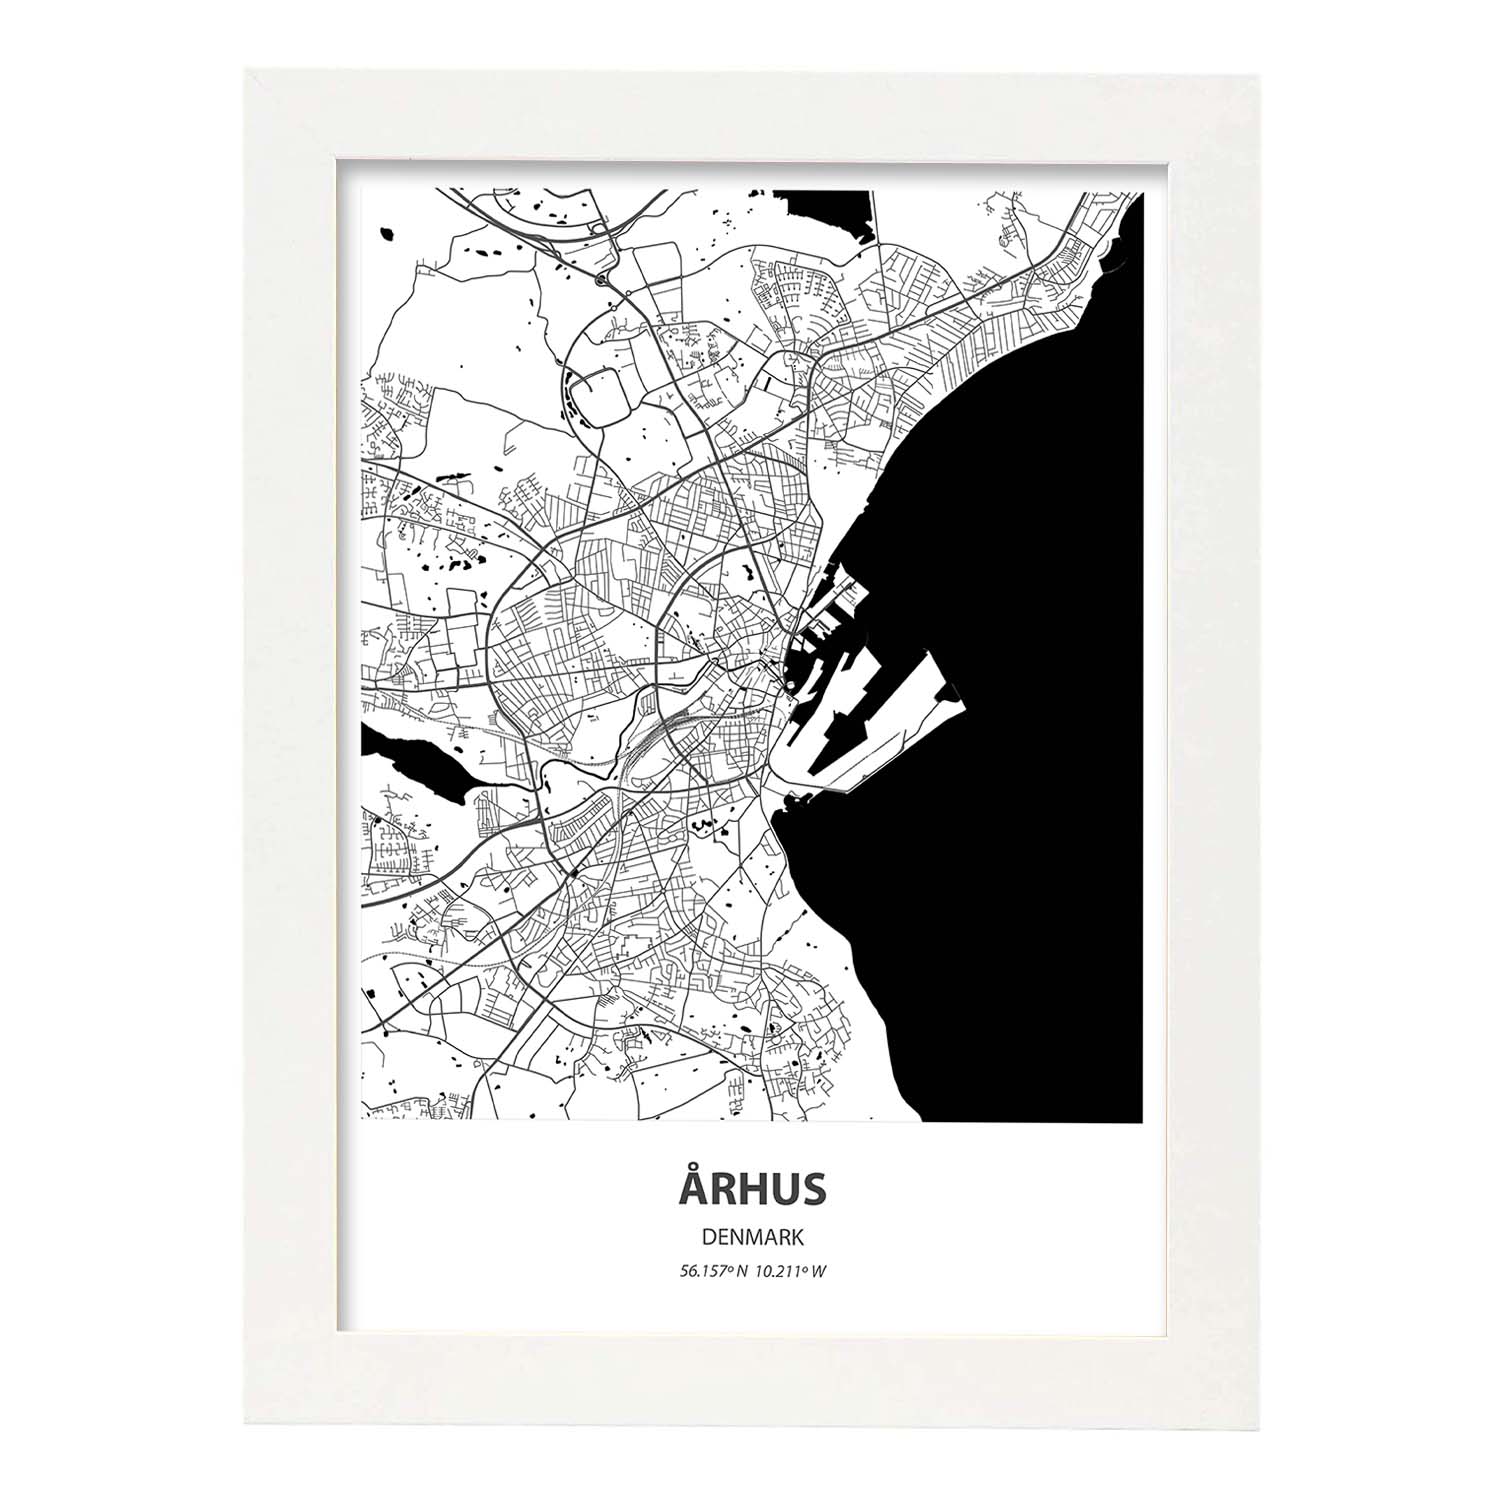 Poster con mapa de Arhus - Dinamarca. Láminas de ciudades del norte de Europa con mares y ríos en color negro.-Artwork-Nacnic-A4-Marco Blanco-Nacnic Estudio SL